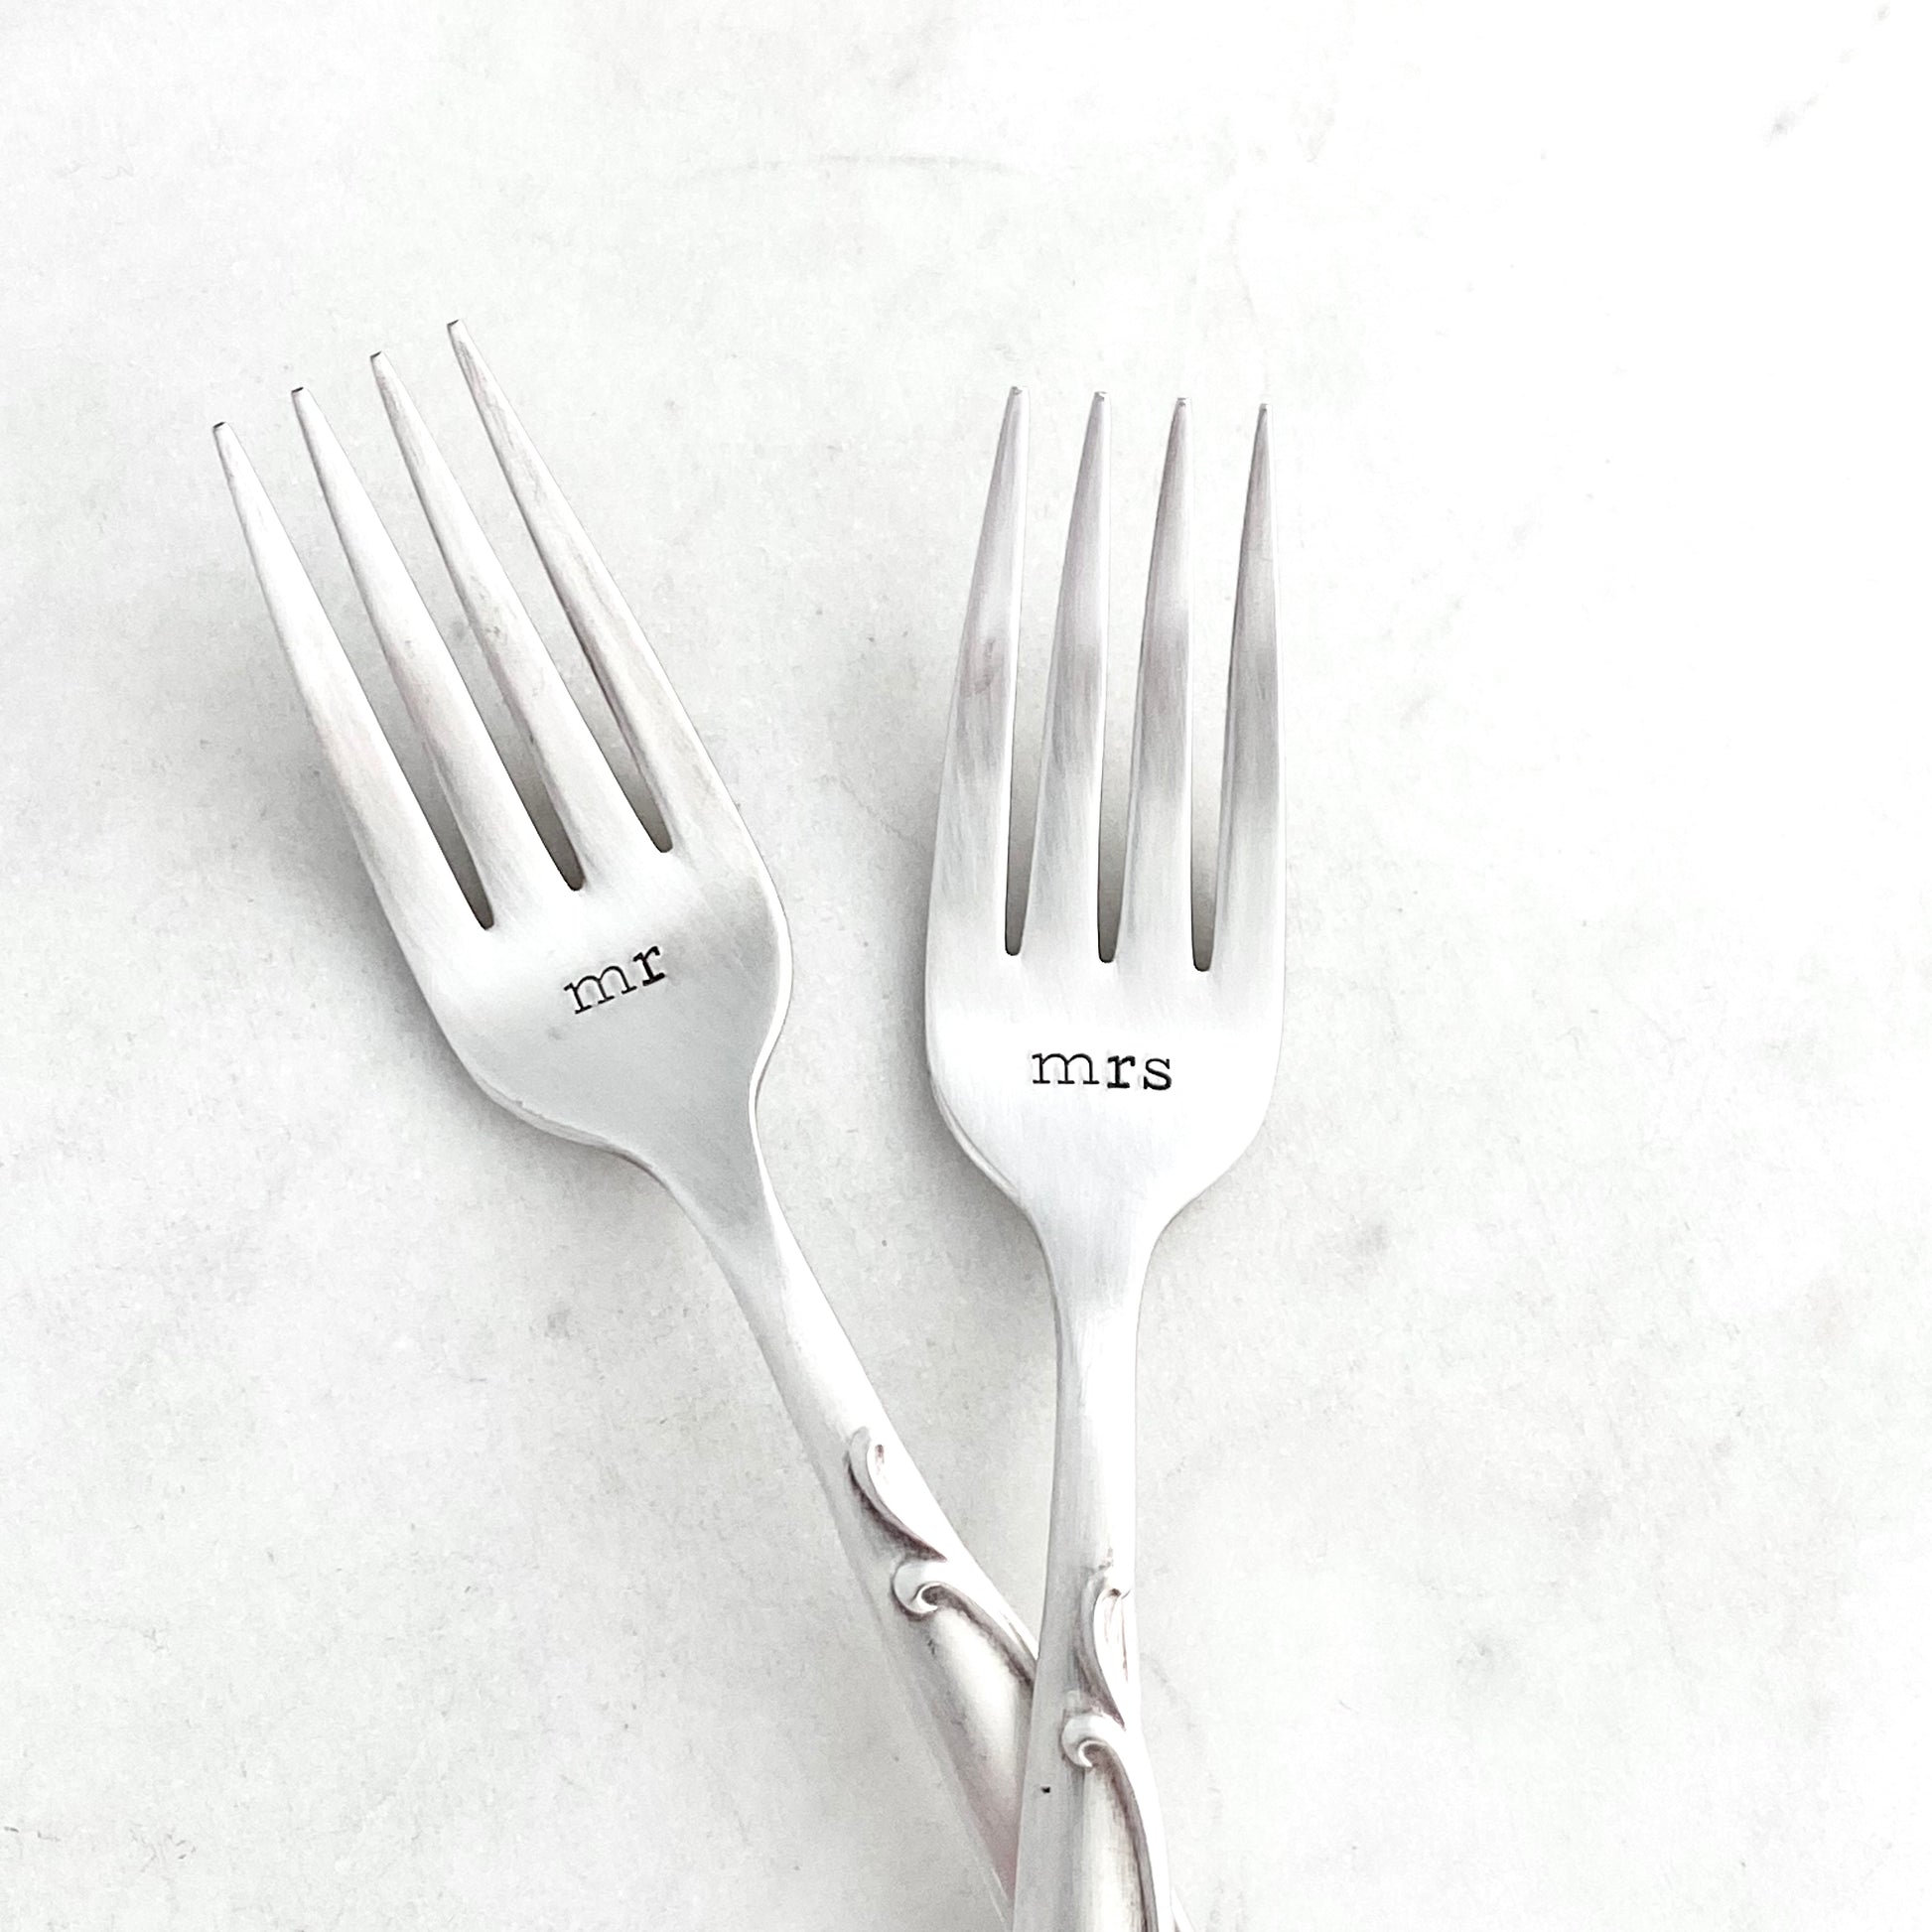 Mr & Mrs, Wedding Fork SET, Hand Stamped Vintage Fork Forks callistafaye   